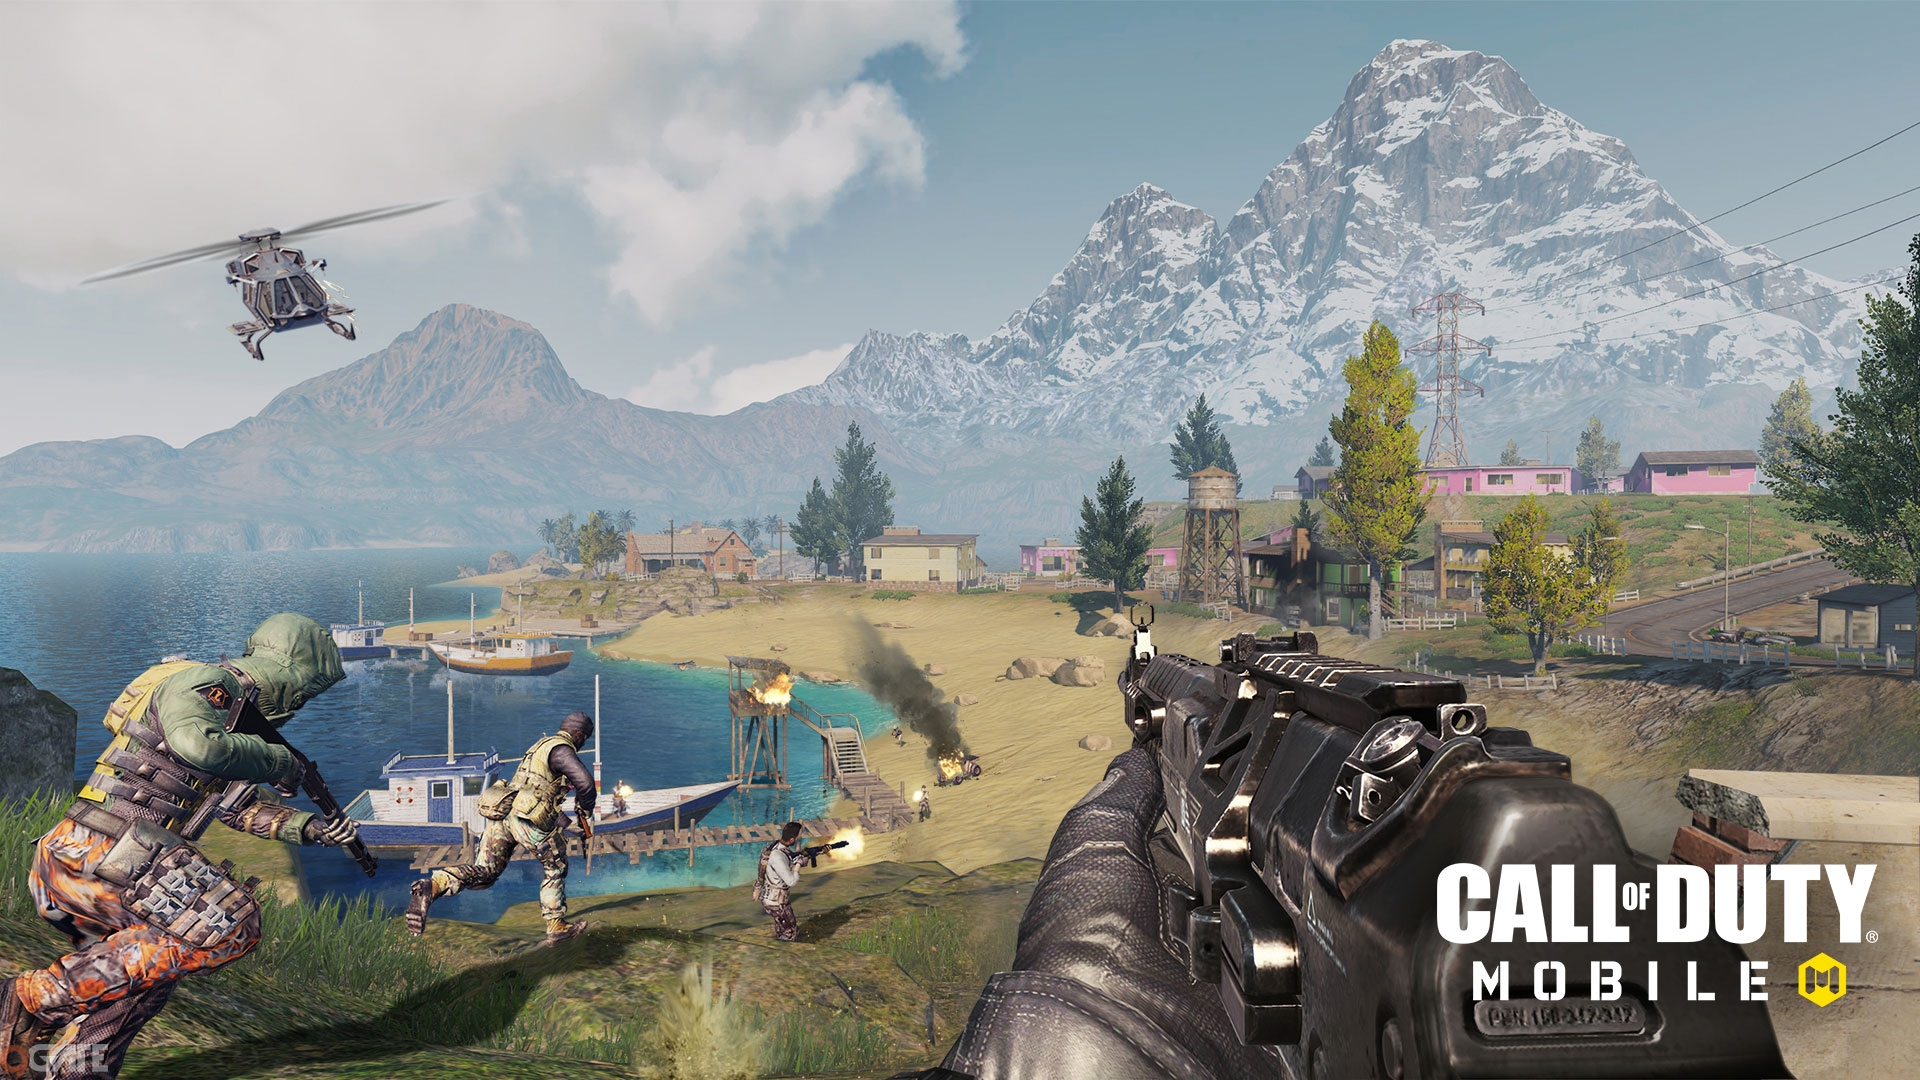 Call of Duty Mobile VN: Tổng hợp những phương tiện có trong game